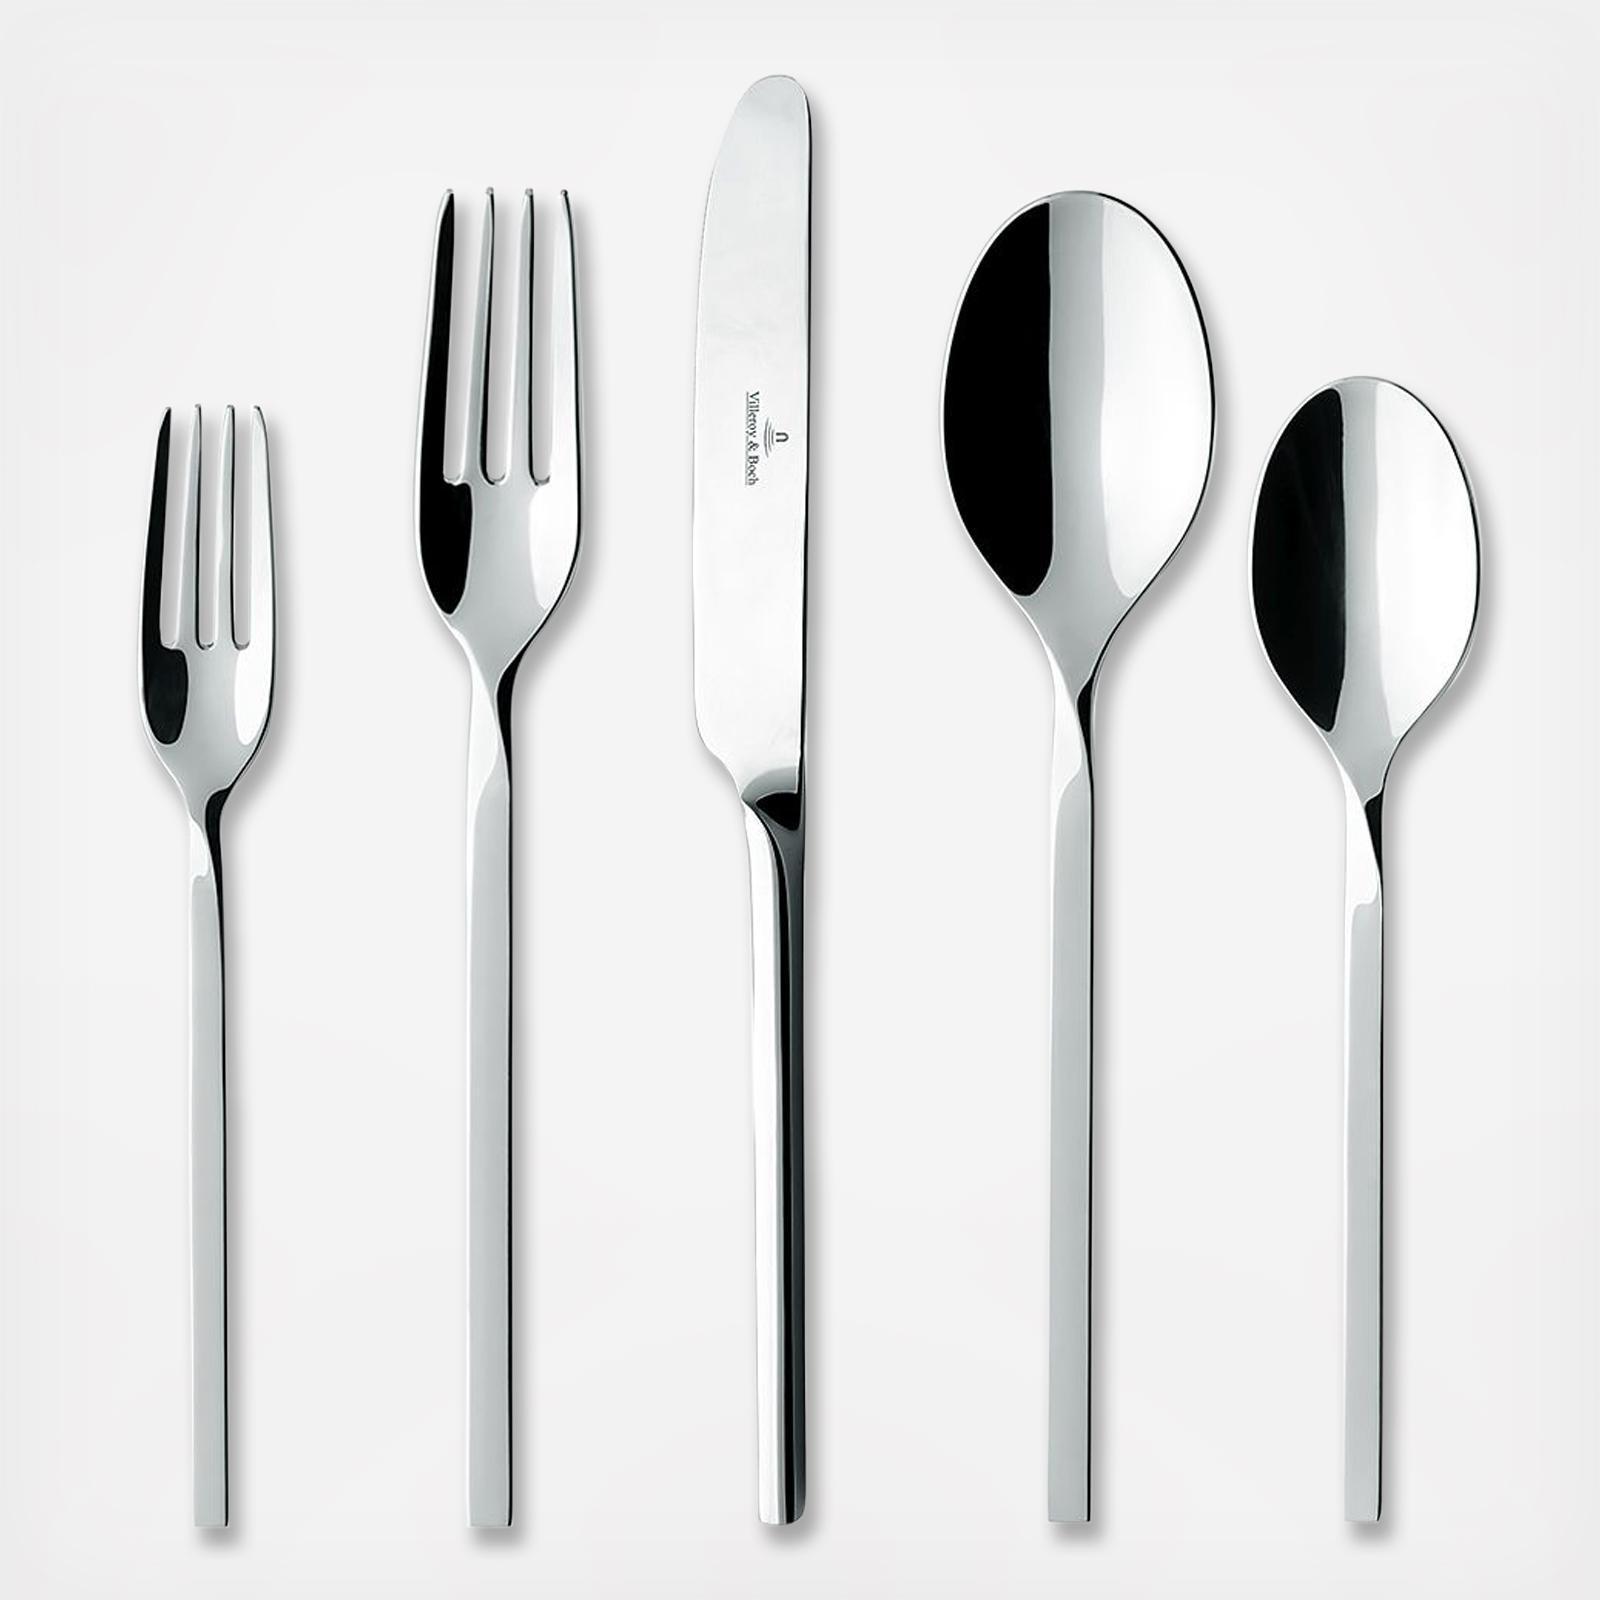 4 Dinner Forks MADEMOISELLE Villeroy & Boch Stainless Steel Glossy Flatware 